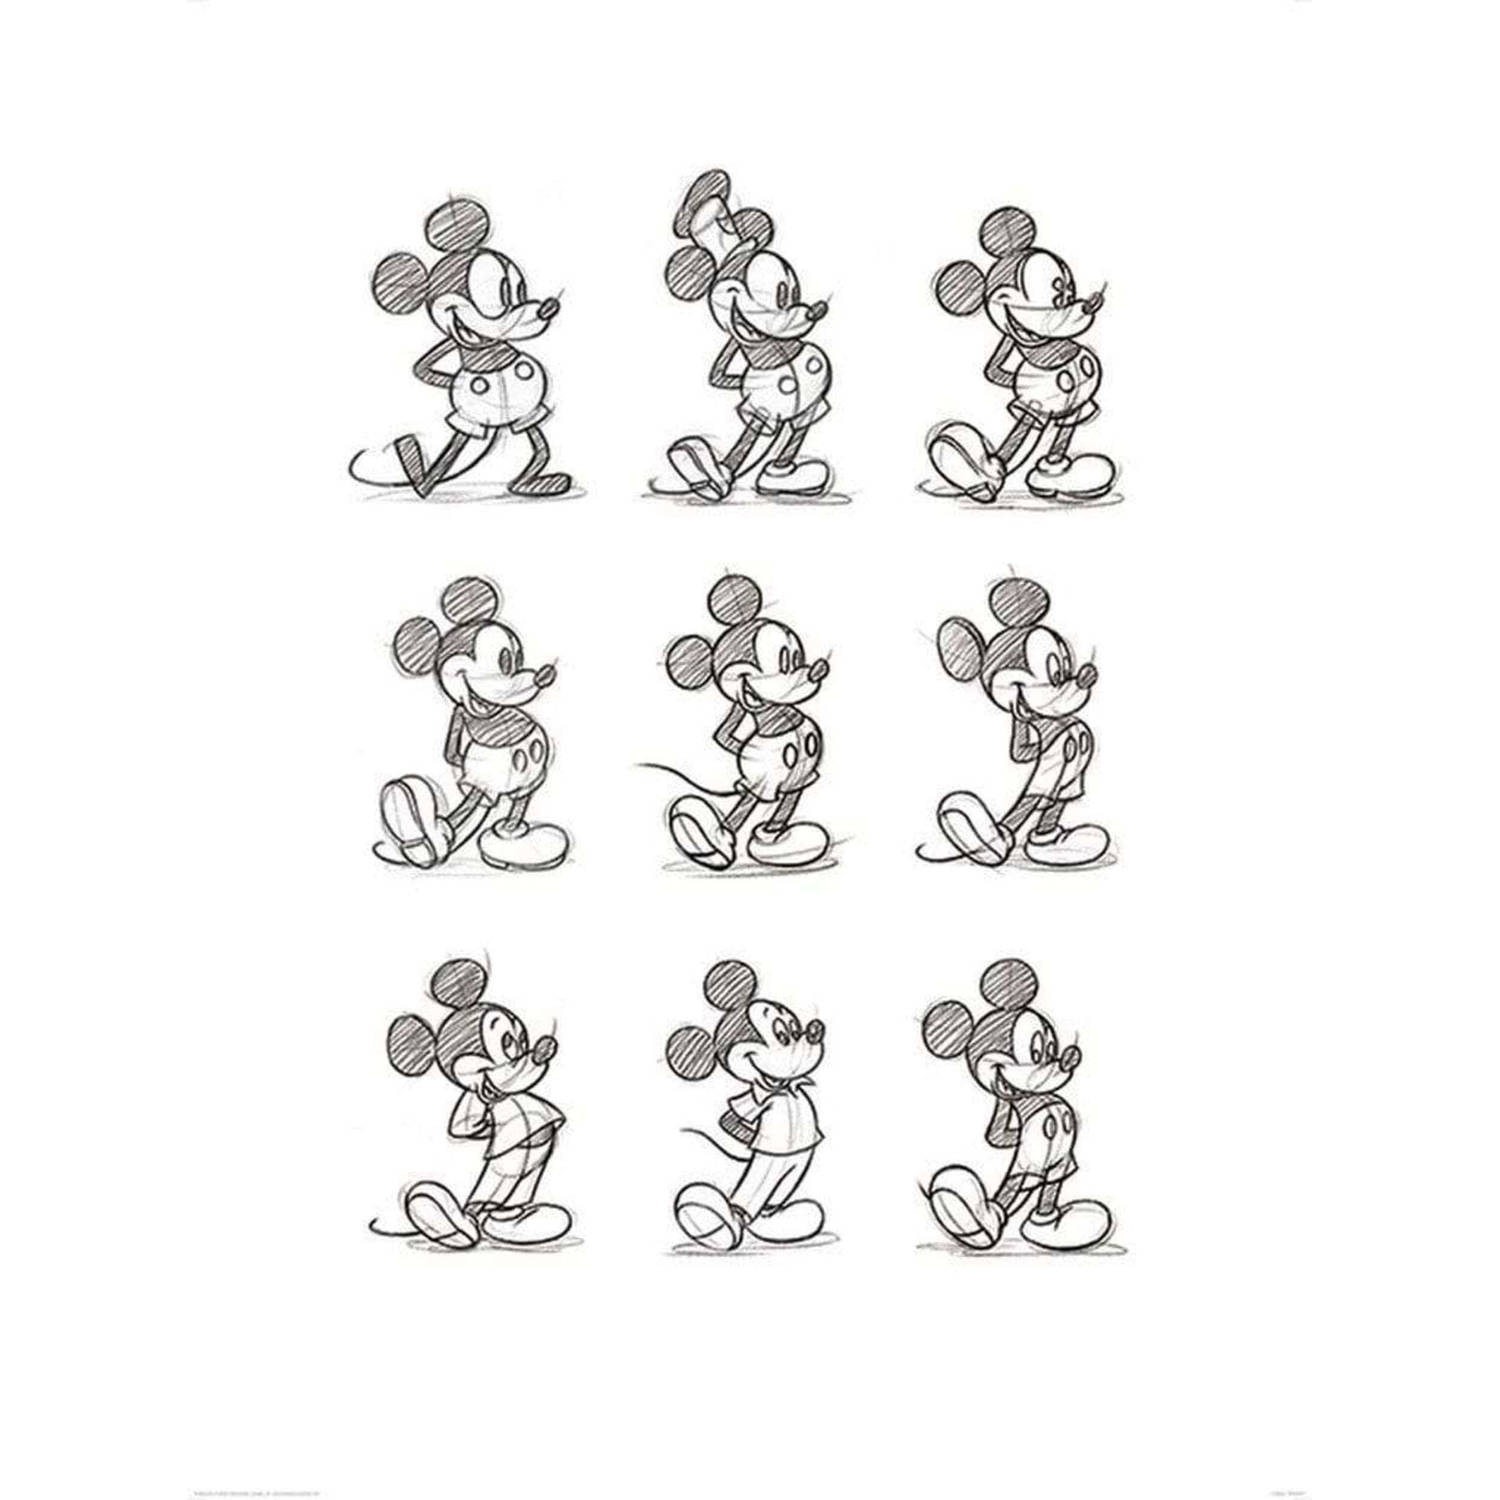 Kunstdruk Mickey Mouse Sketched Multi 60x80cm